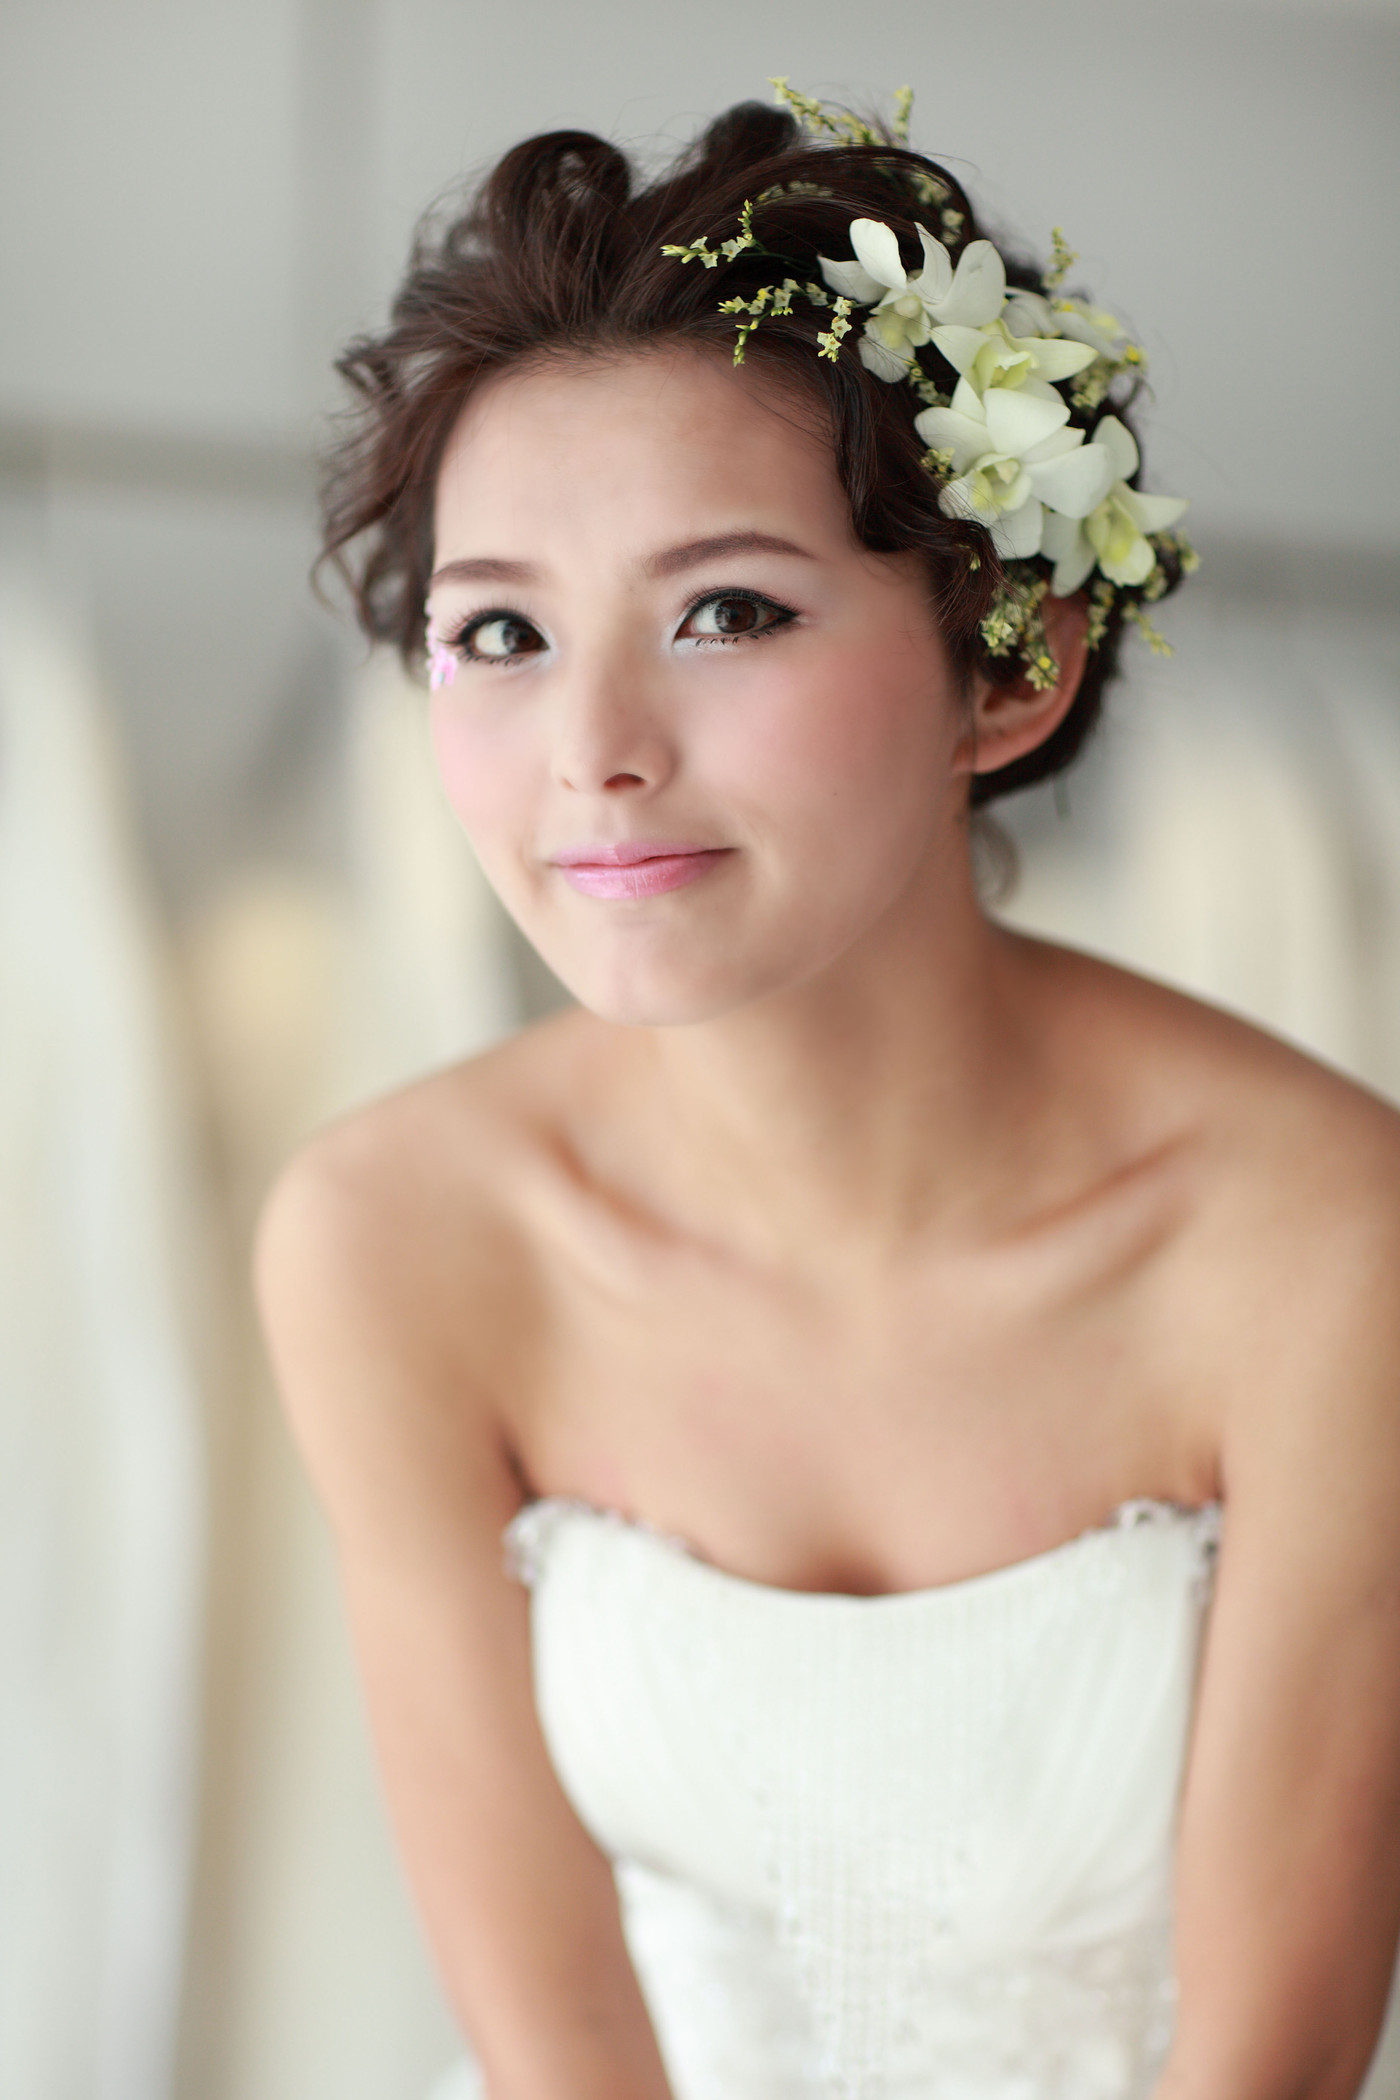 新娘短发造型图片 新娘短发造型推荐【婚礼纪】